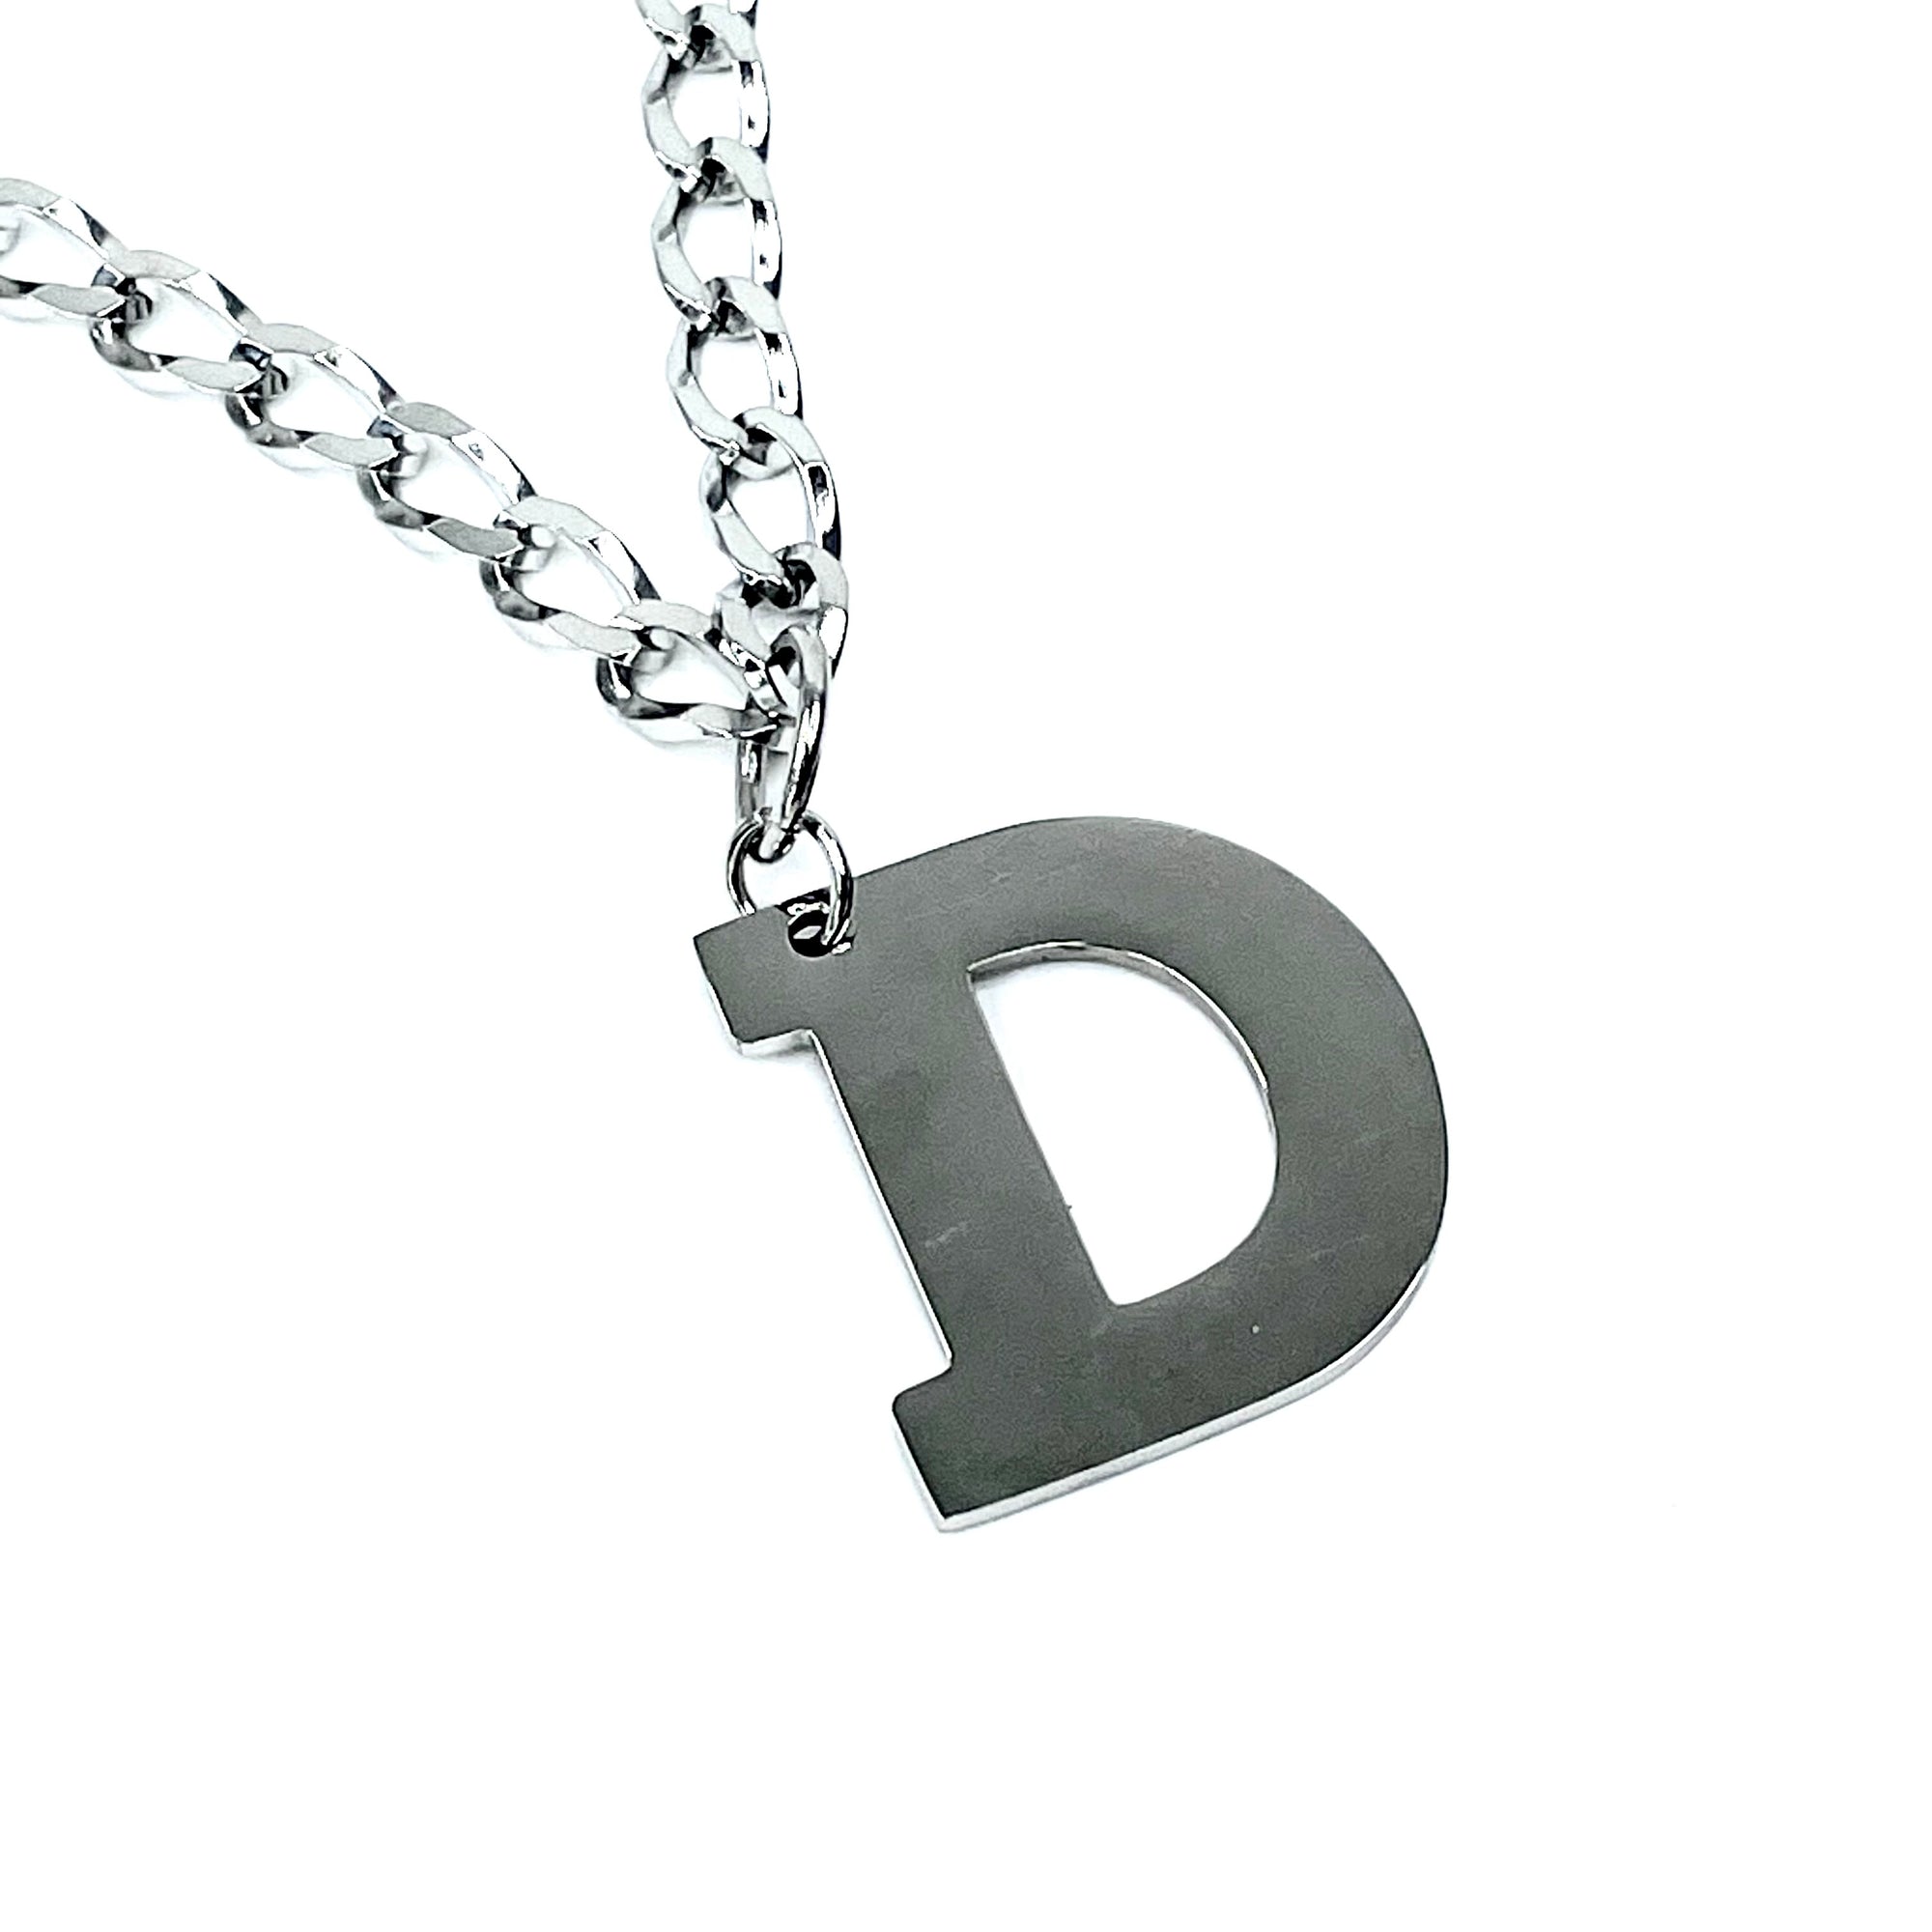 Lettering Legend Necklace Necklaces Cerese D, Inc. Silver D 